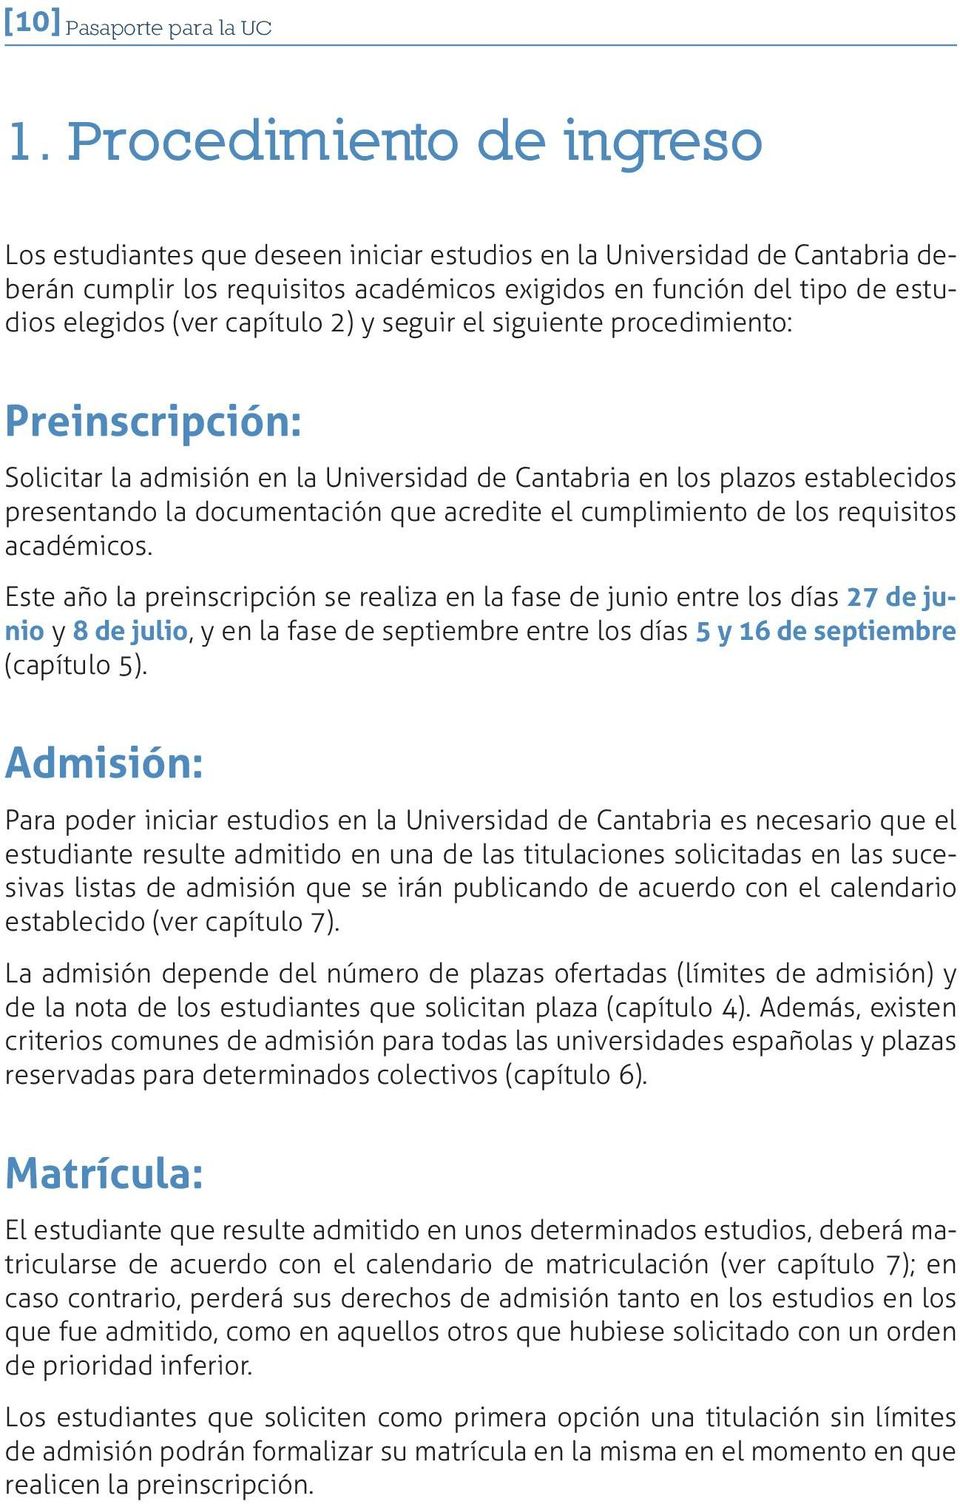 capítulo 2) y seguir el siguiente procedimiento: Preinscripción: Solicitar la admisión en la Universidad de Cantabria en los plazos establecidos presentando la documentación que acredite el